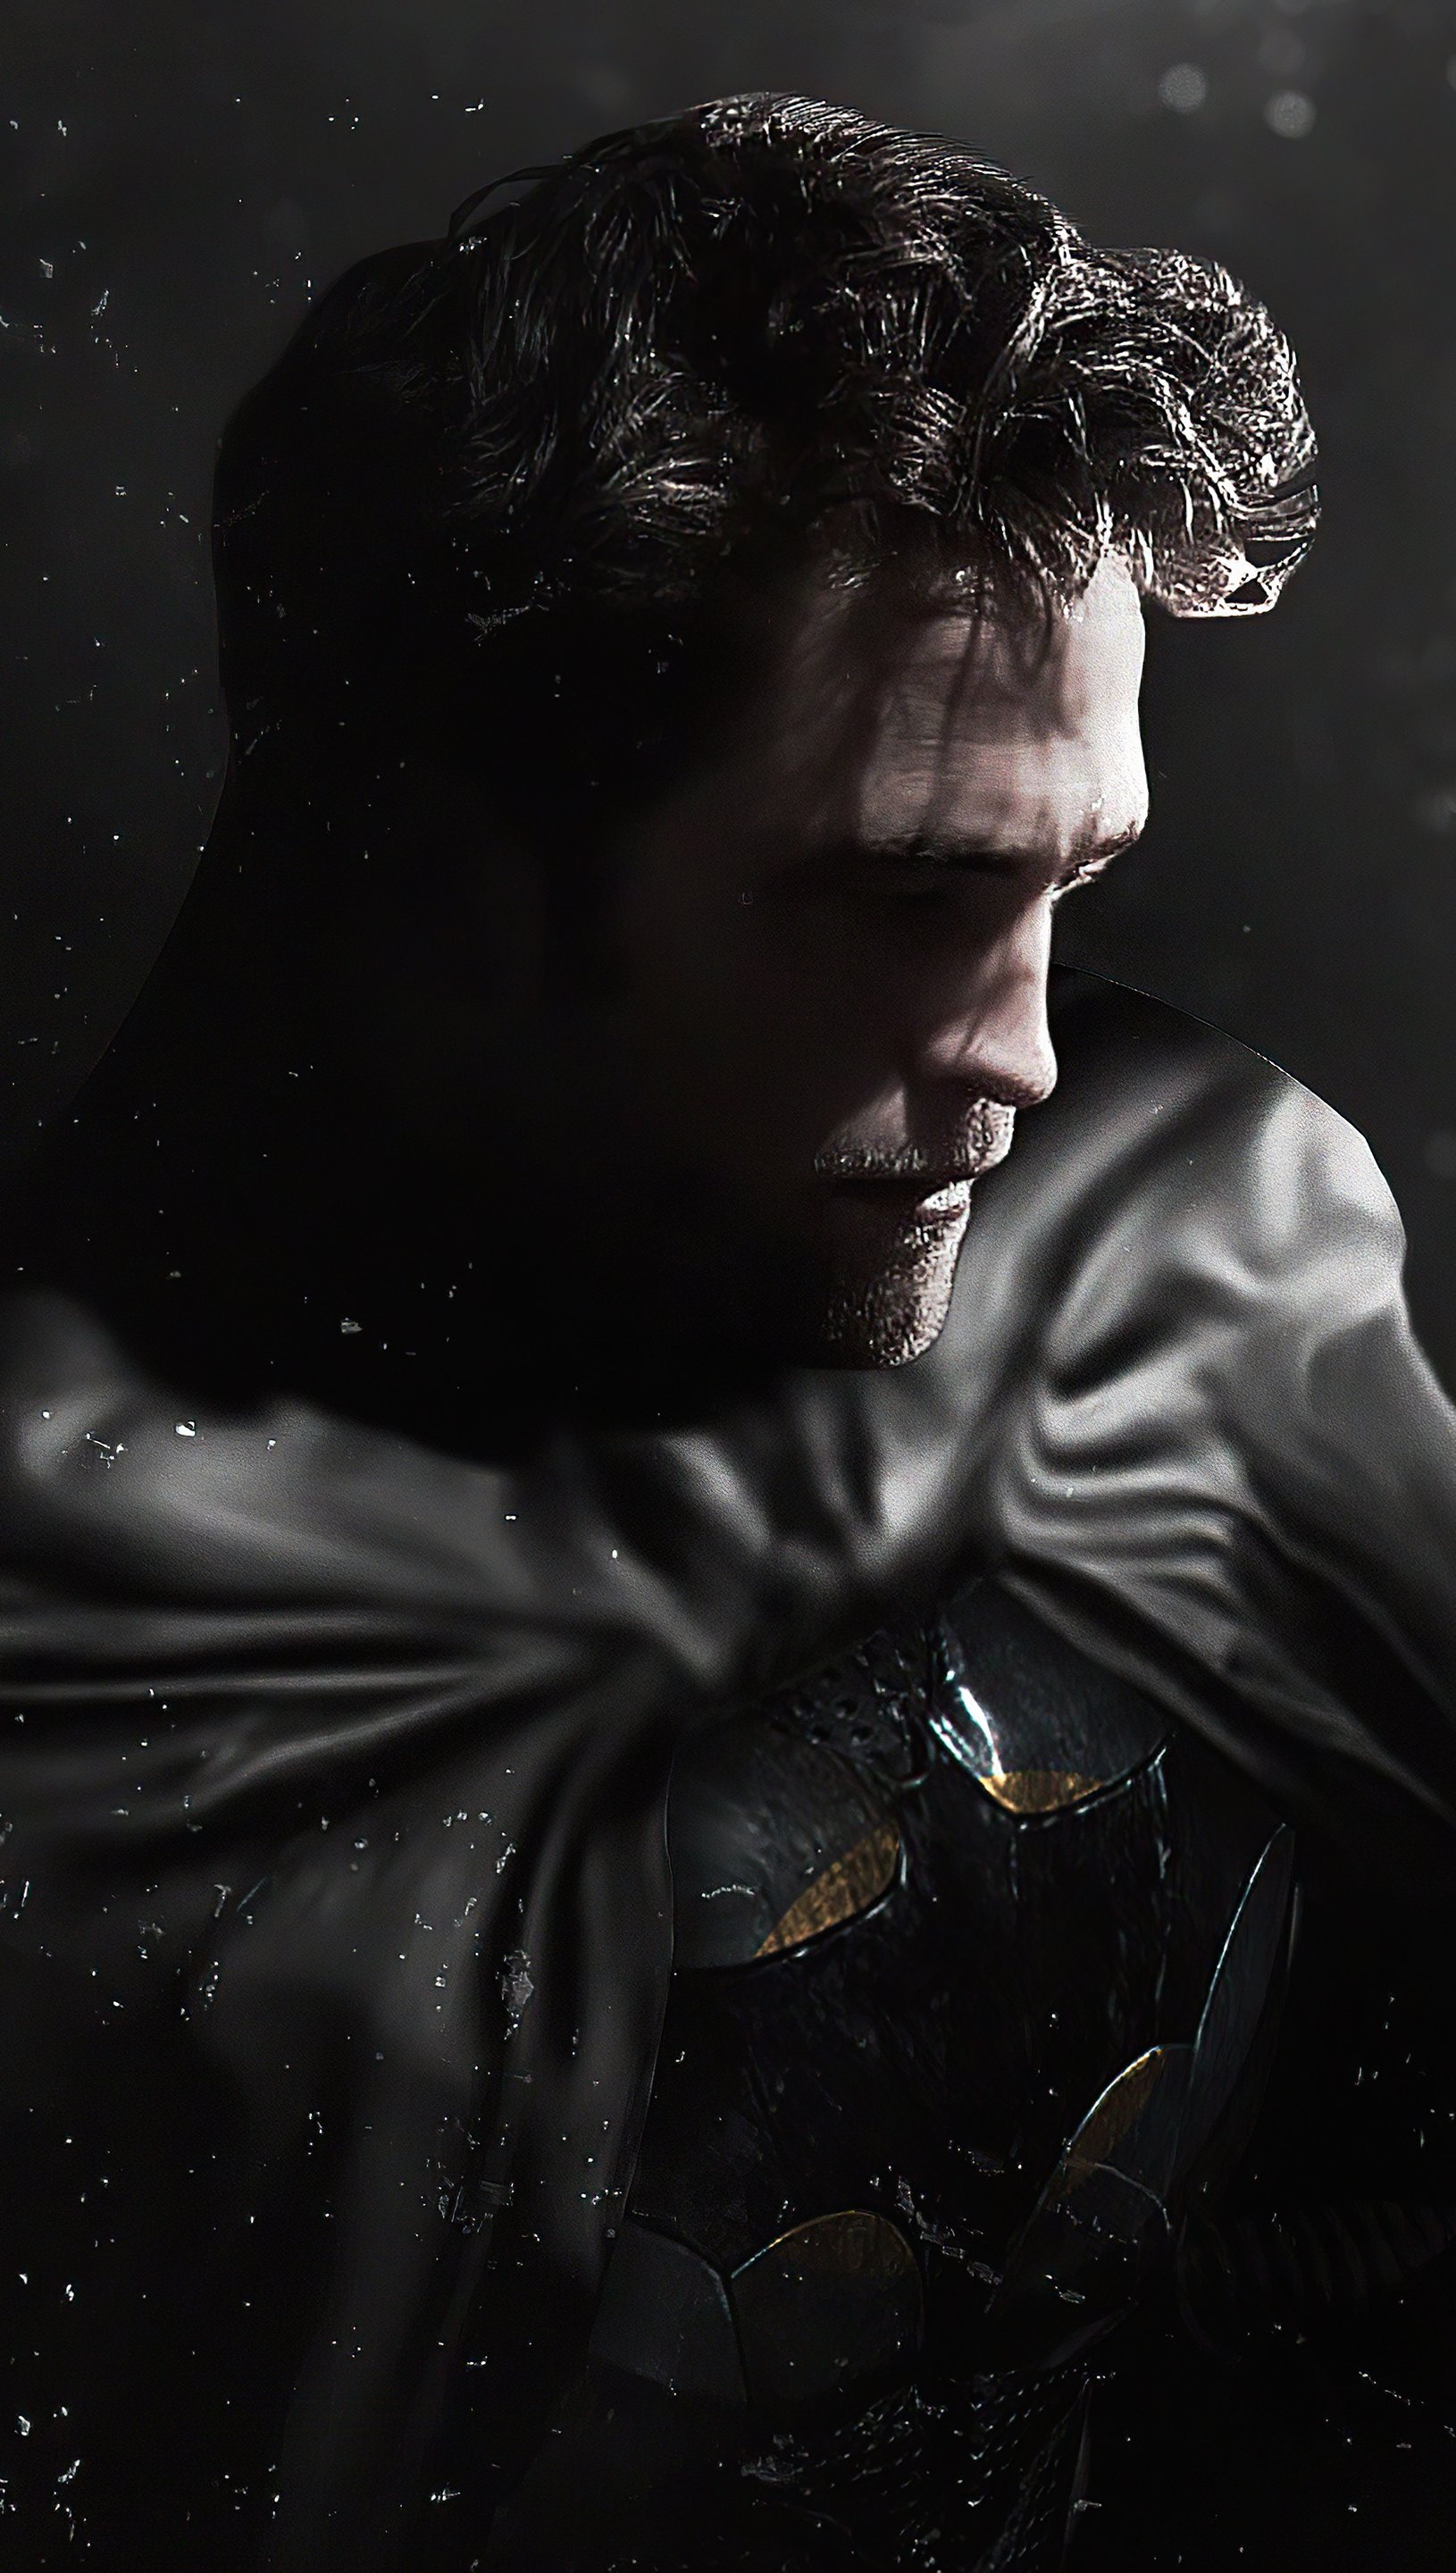 The Batman Robert Pattinson mask off Wallpaper 5k Ultra HD ID:10355